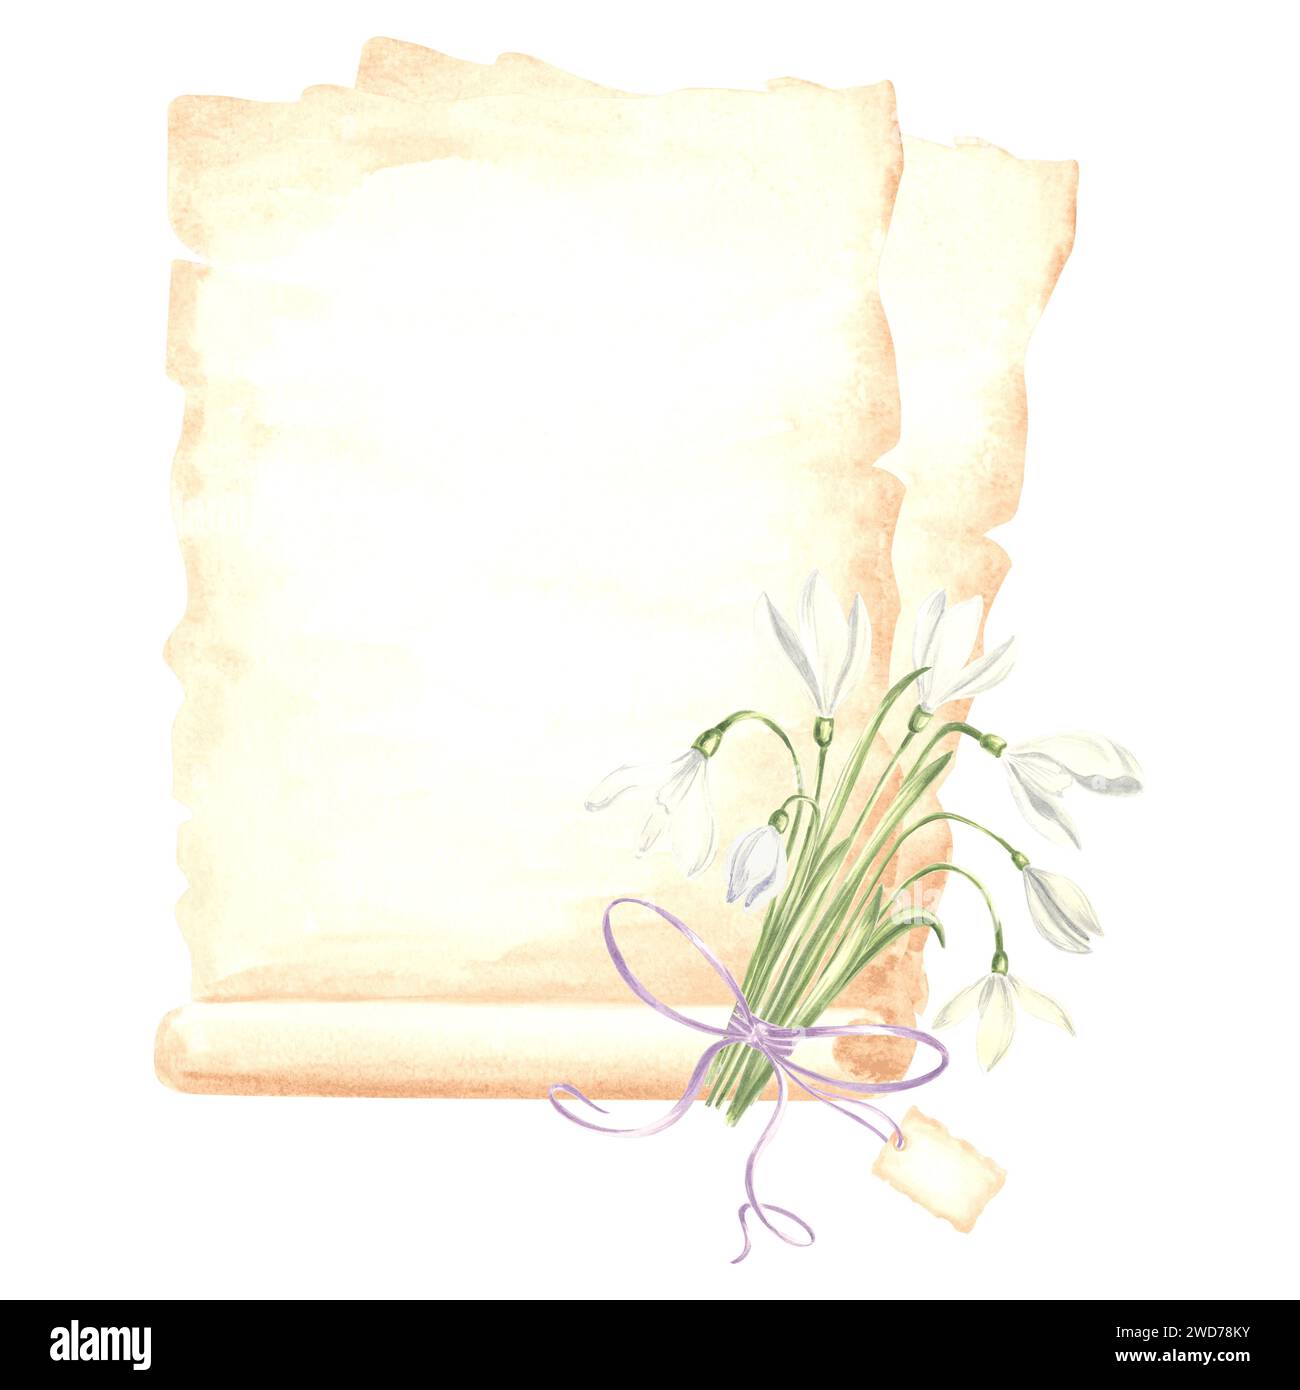 Aquarellkomposition Papyrus, gereifte Blätter Papier mit Strauß von weißen Schneetropfen Blume mit Schleife und Tag. Isolierte handgezeichnete Illustrationsvorlage f Stockfoto